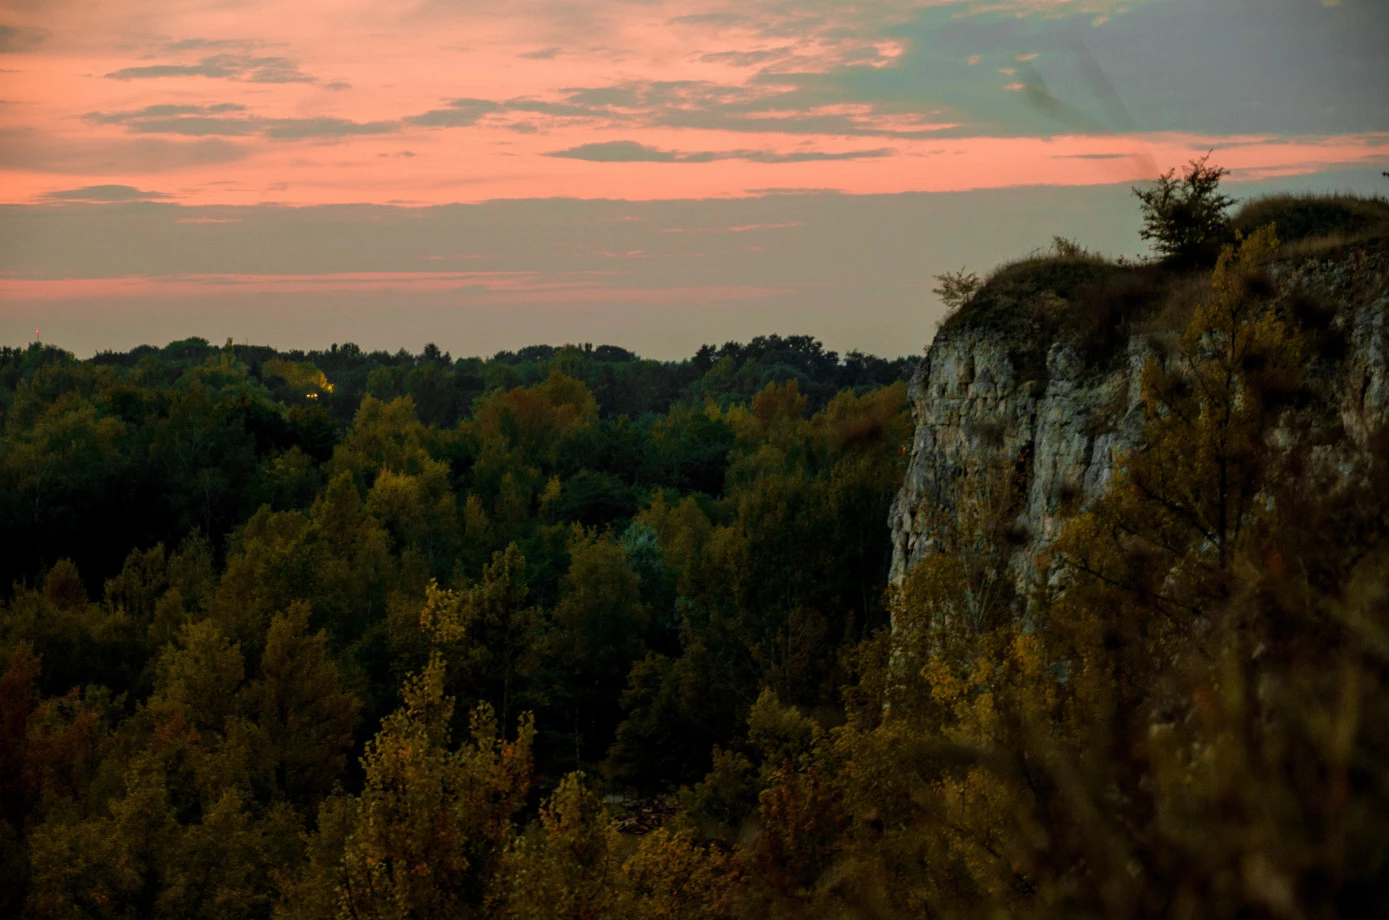 zdjęcia krakow fotograf piotr-baran portfolio zdjecia krajobrazu gory mazury